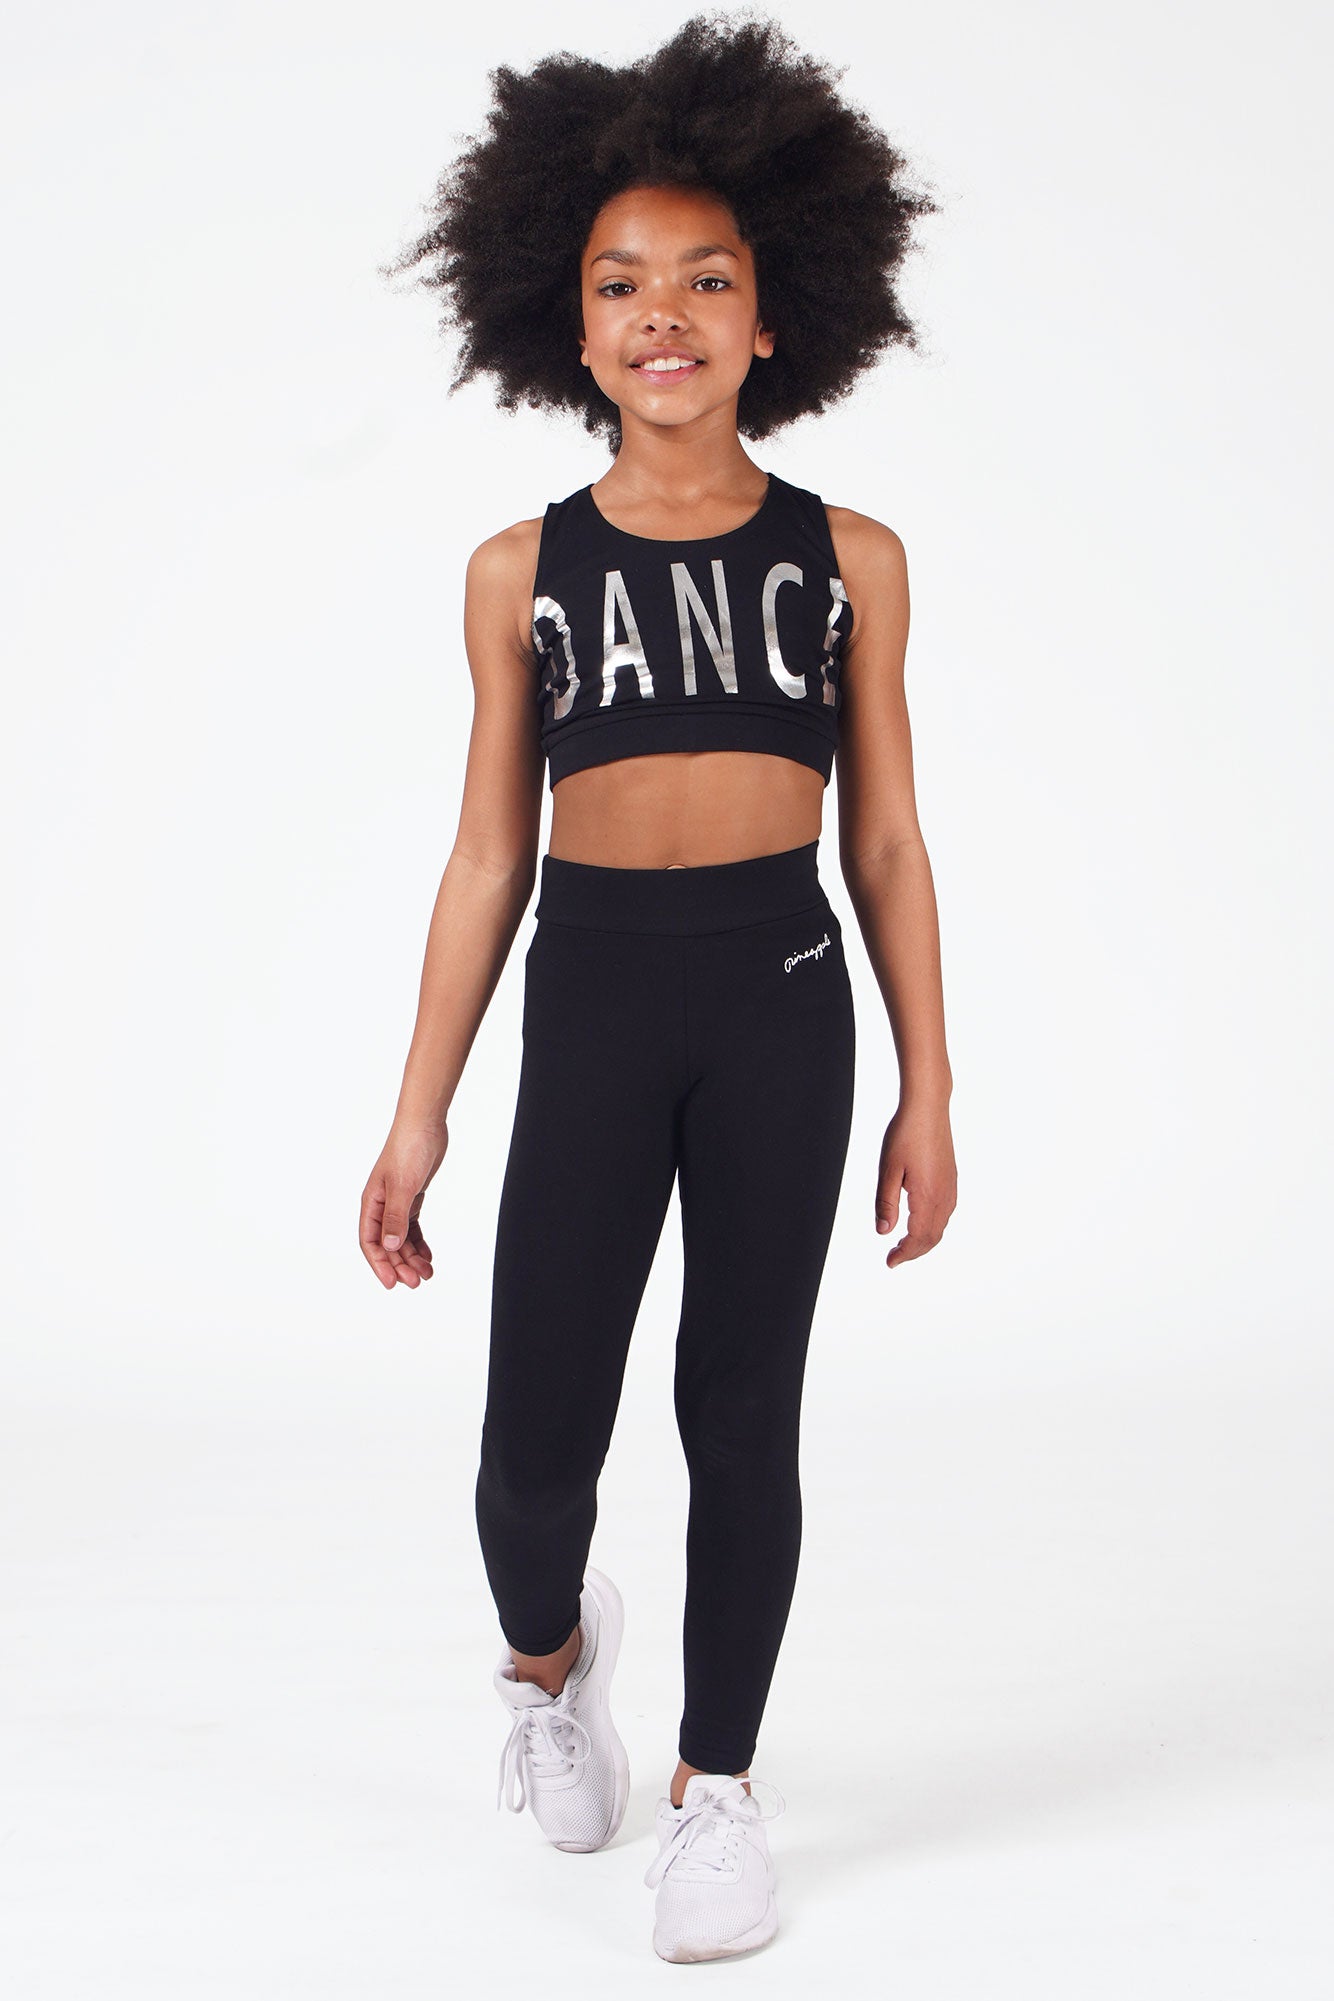 https://www.pineapple.uk.com/cdn/shop/products/girls-black-band-leggings-02.jpg?v=1621252492